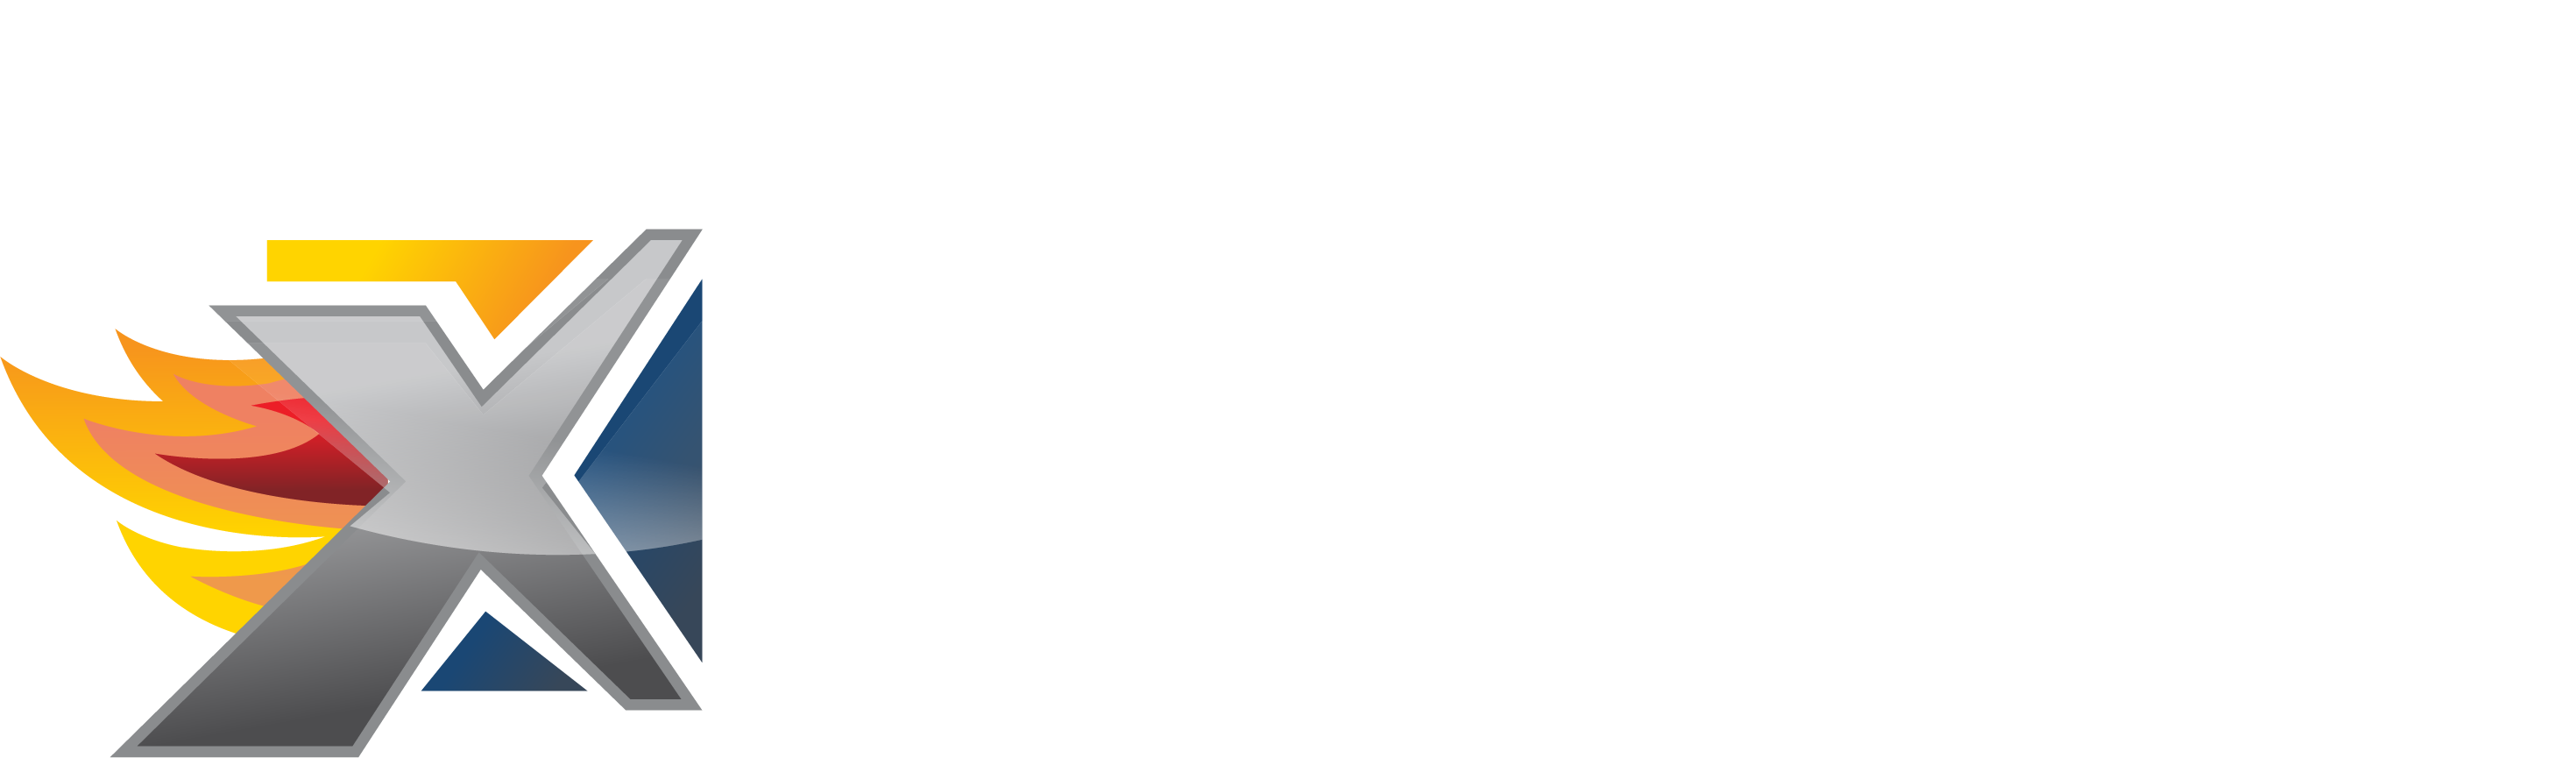 Heat Exchange